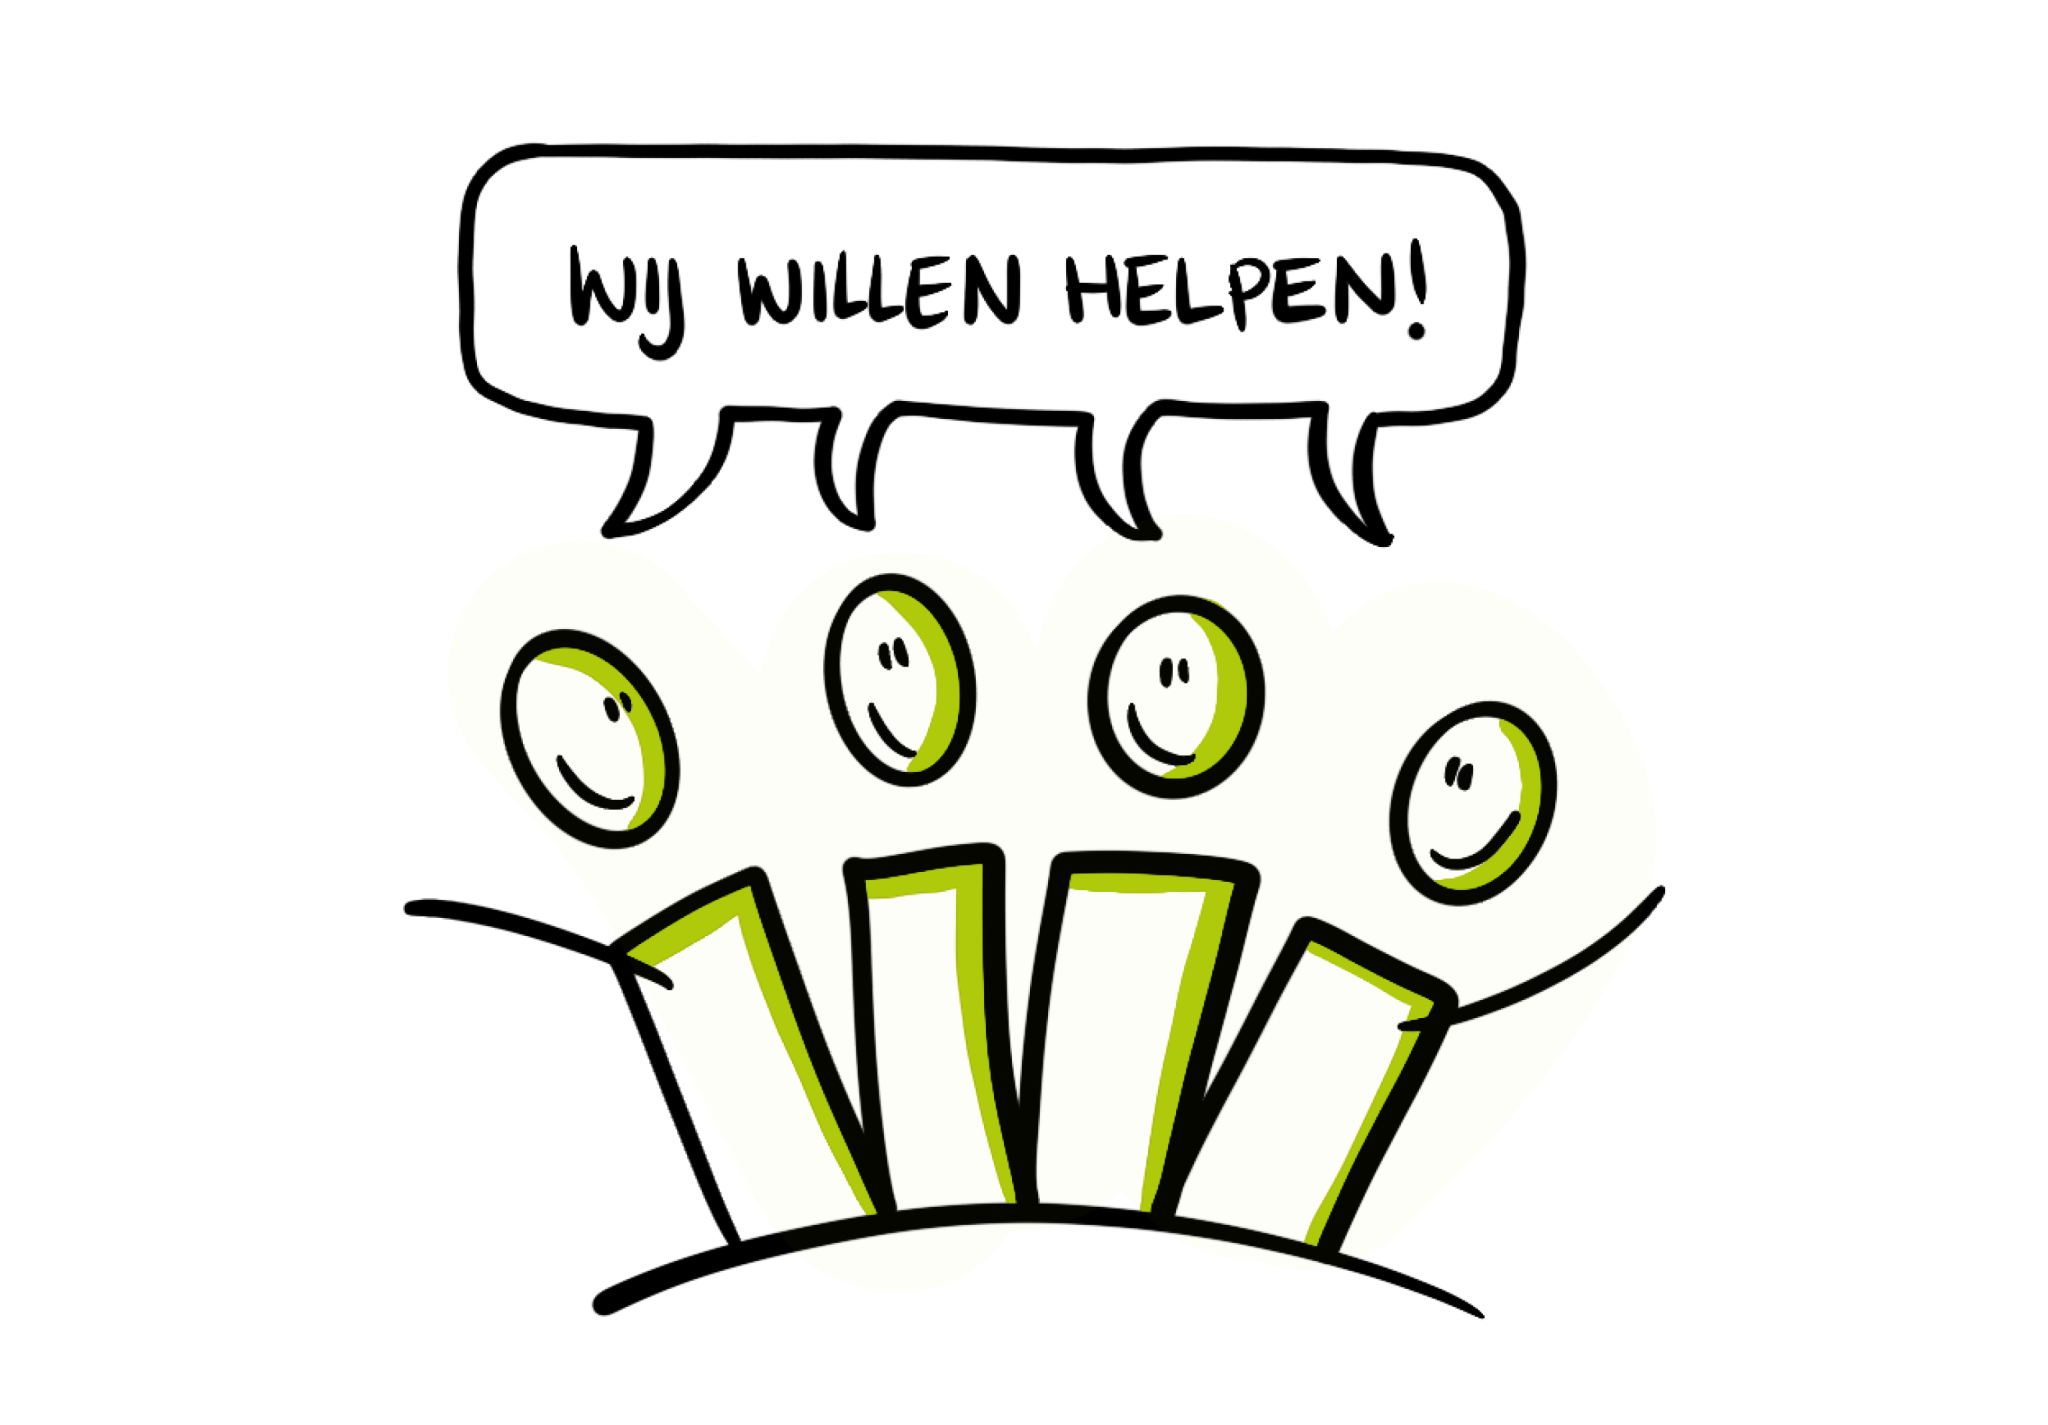 Illustratie van poppetjes met tekst "Wij willen helpen!"